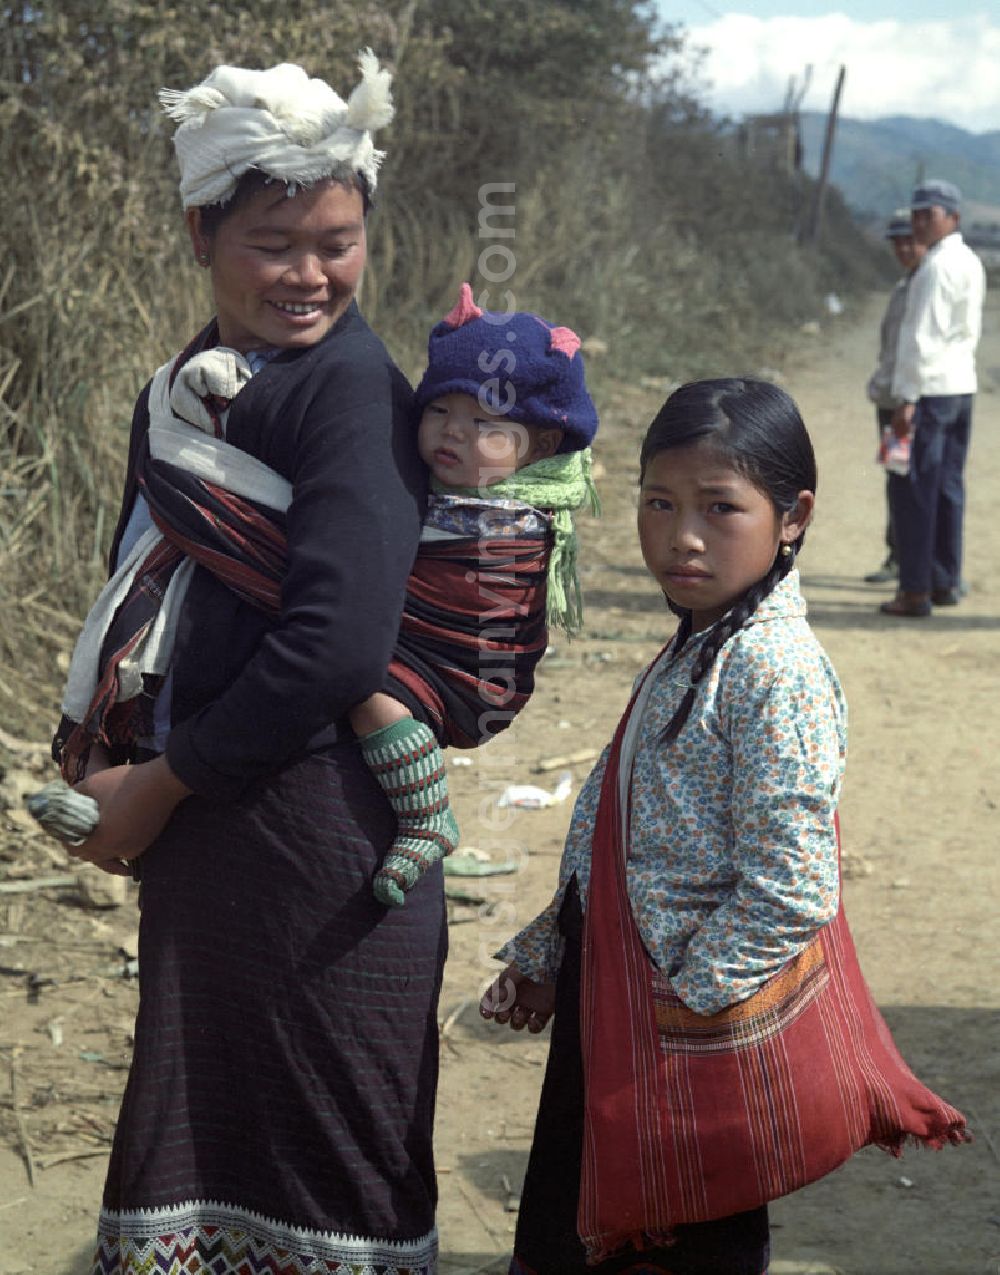 Xieng Khouang: Frauen und Kinder aus dem Volksstamm der Meo (auch Hmong) auf einer Straße nahe sogenannten Ebene der Tonkrüge in der Provinz Xieng Khouang in der Demokratischen Volksrepublik Laos. Die Hmong waren im Vietnam-Krieg involviert. In dessen Folge gehörten sie zu einer verfolgten und zurückgezogen lebenden Minderheit in Laos.